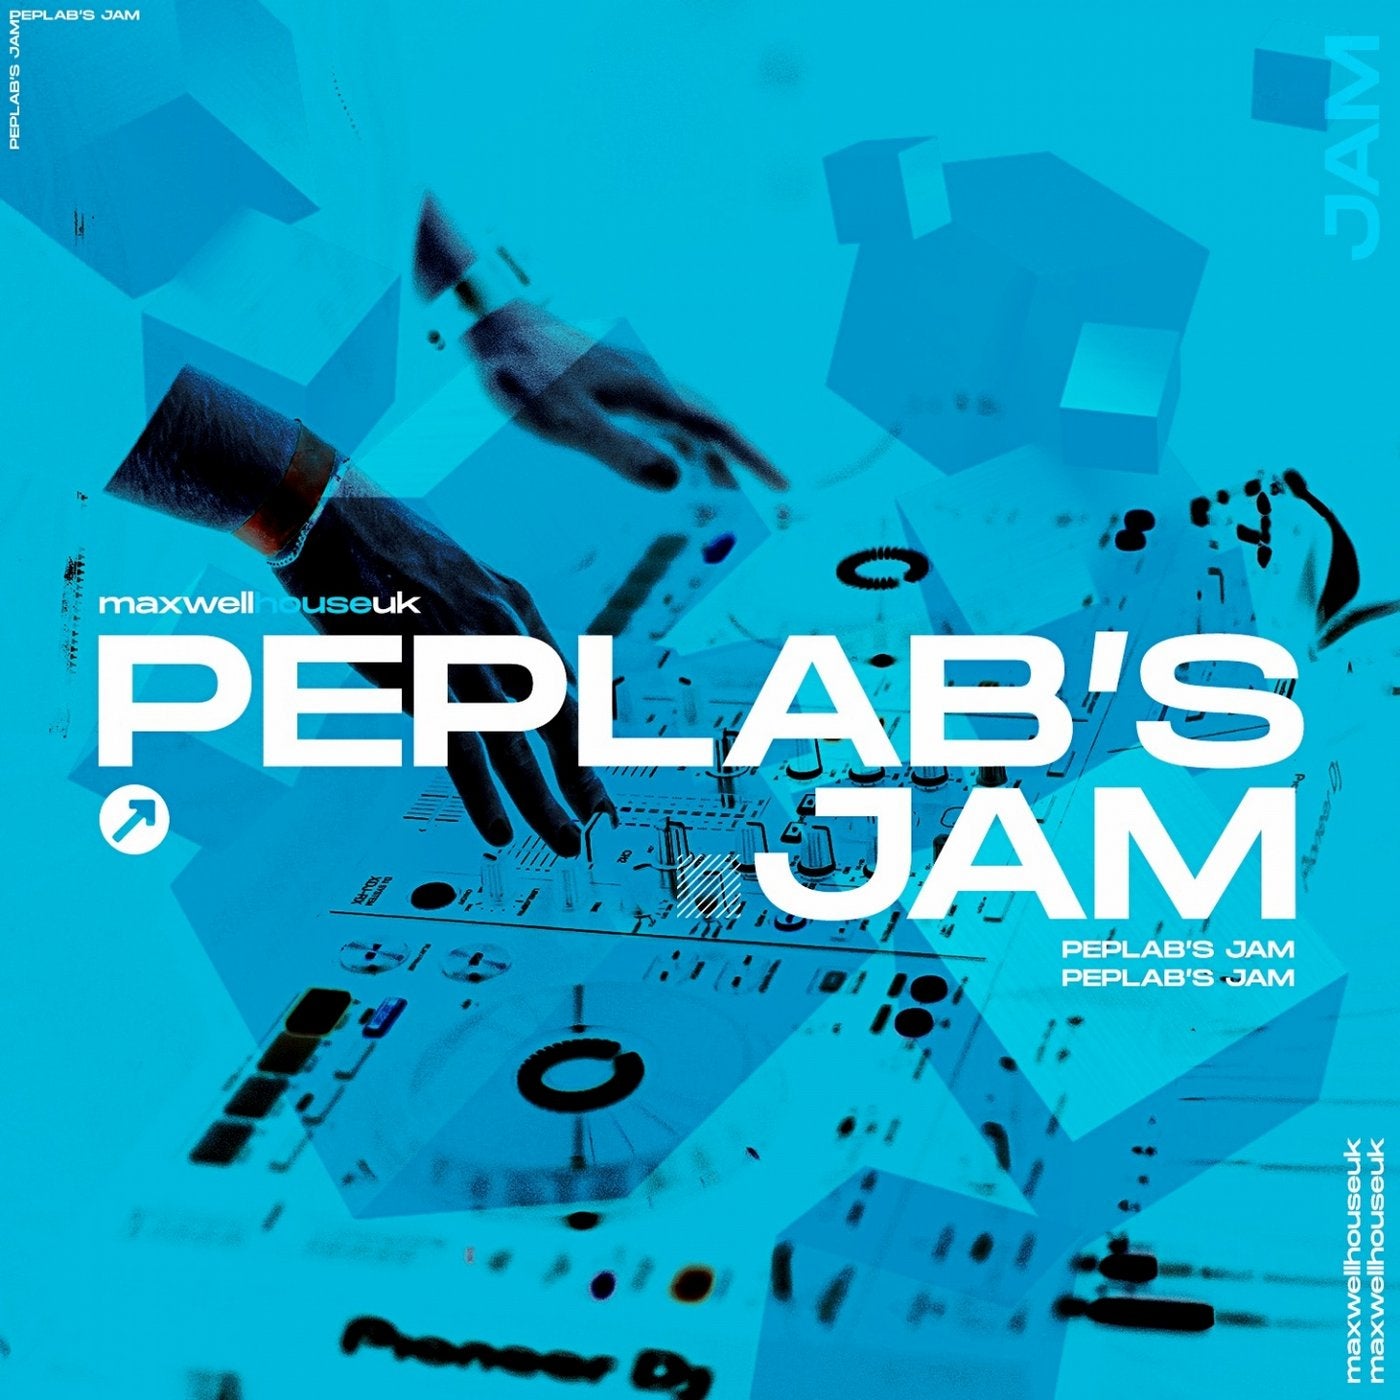 Peplab's Jam